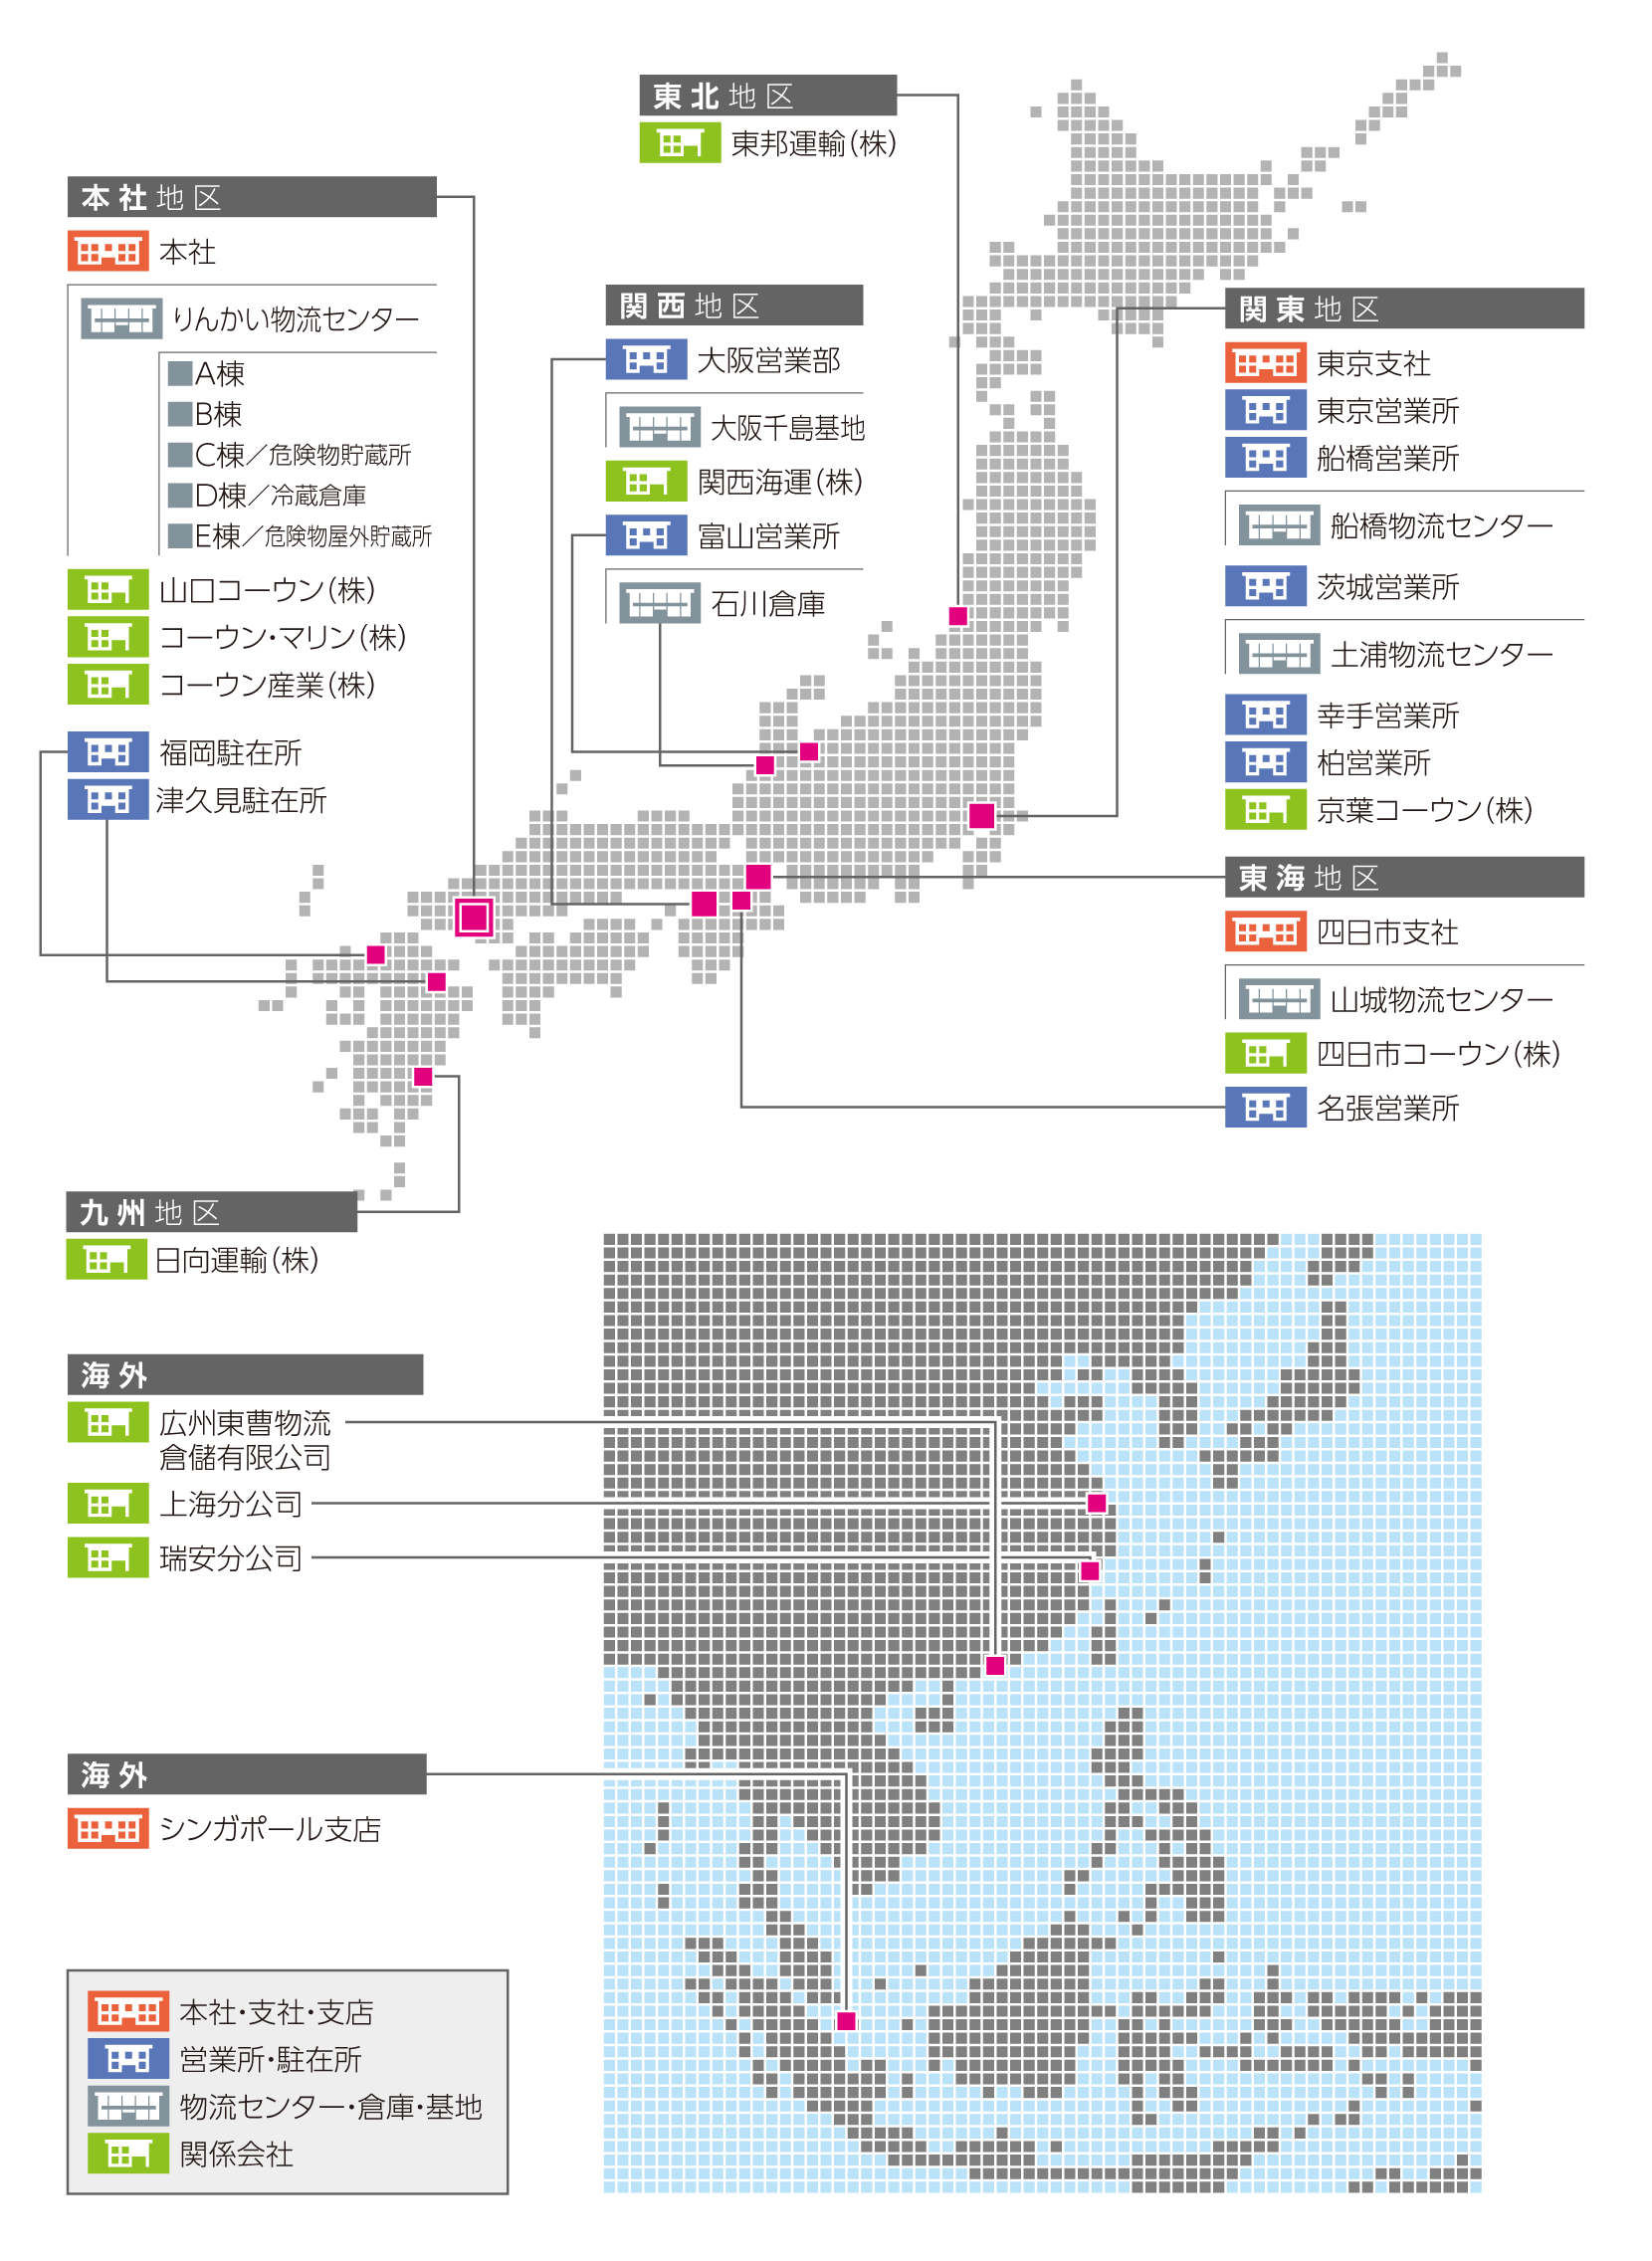 東ソー物流株式会社の拠点および関係会社の地図